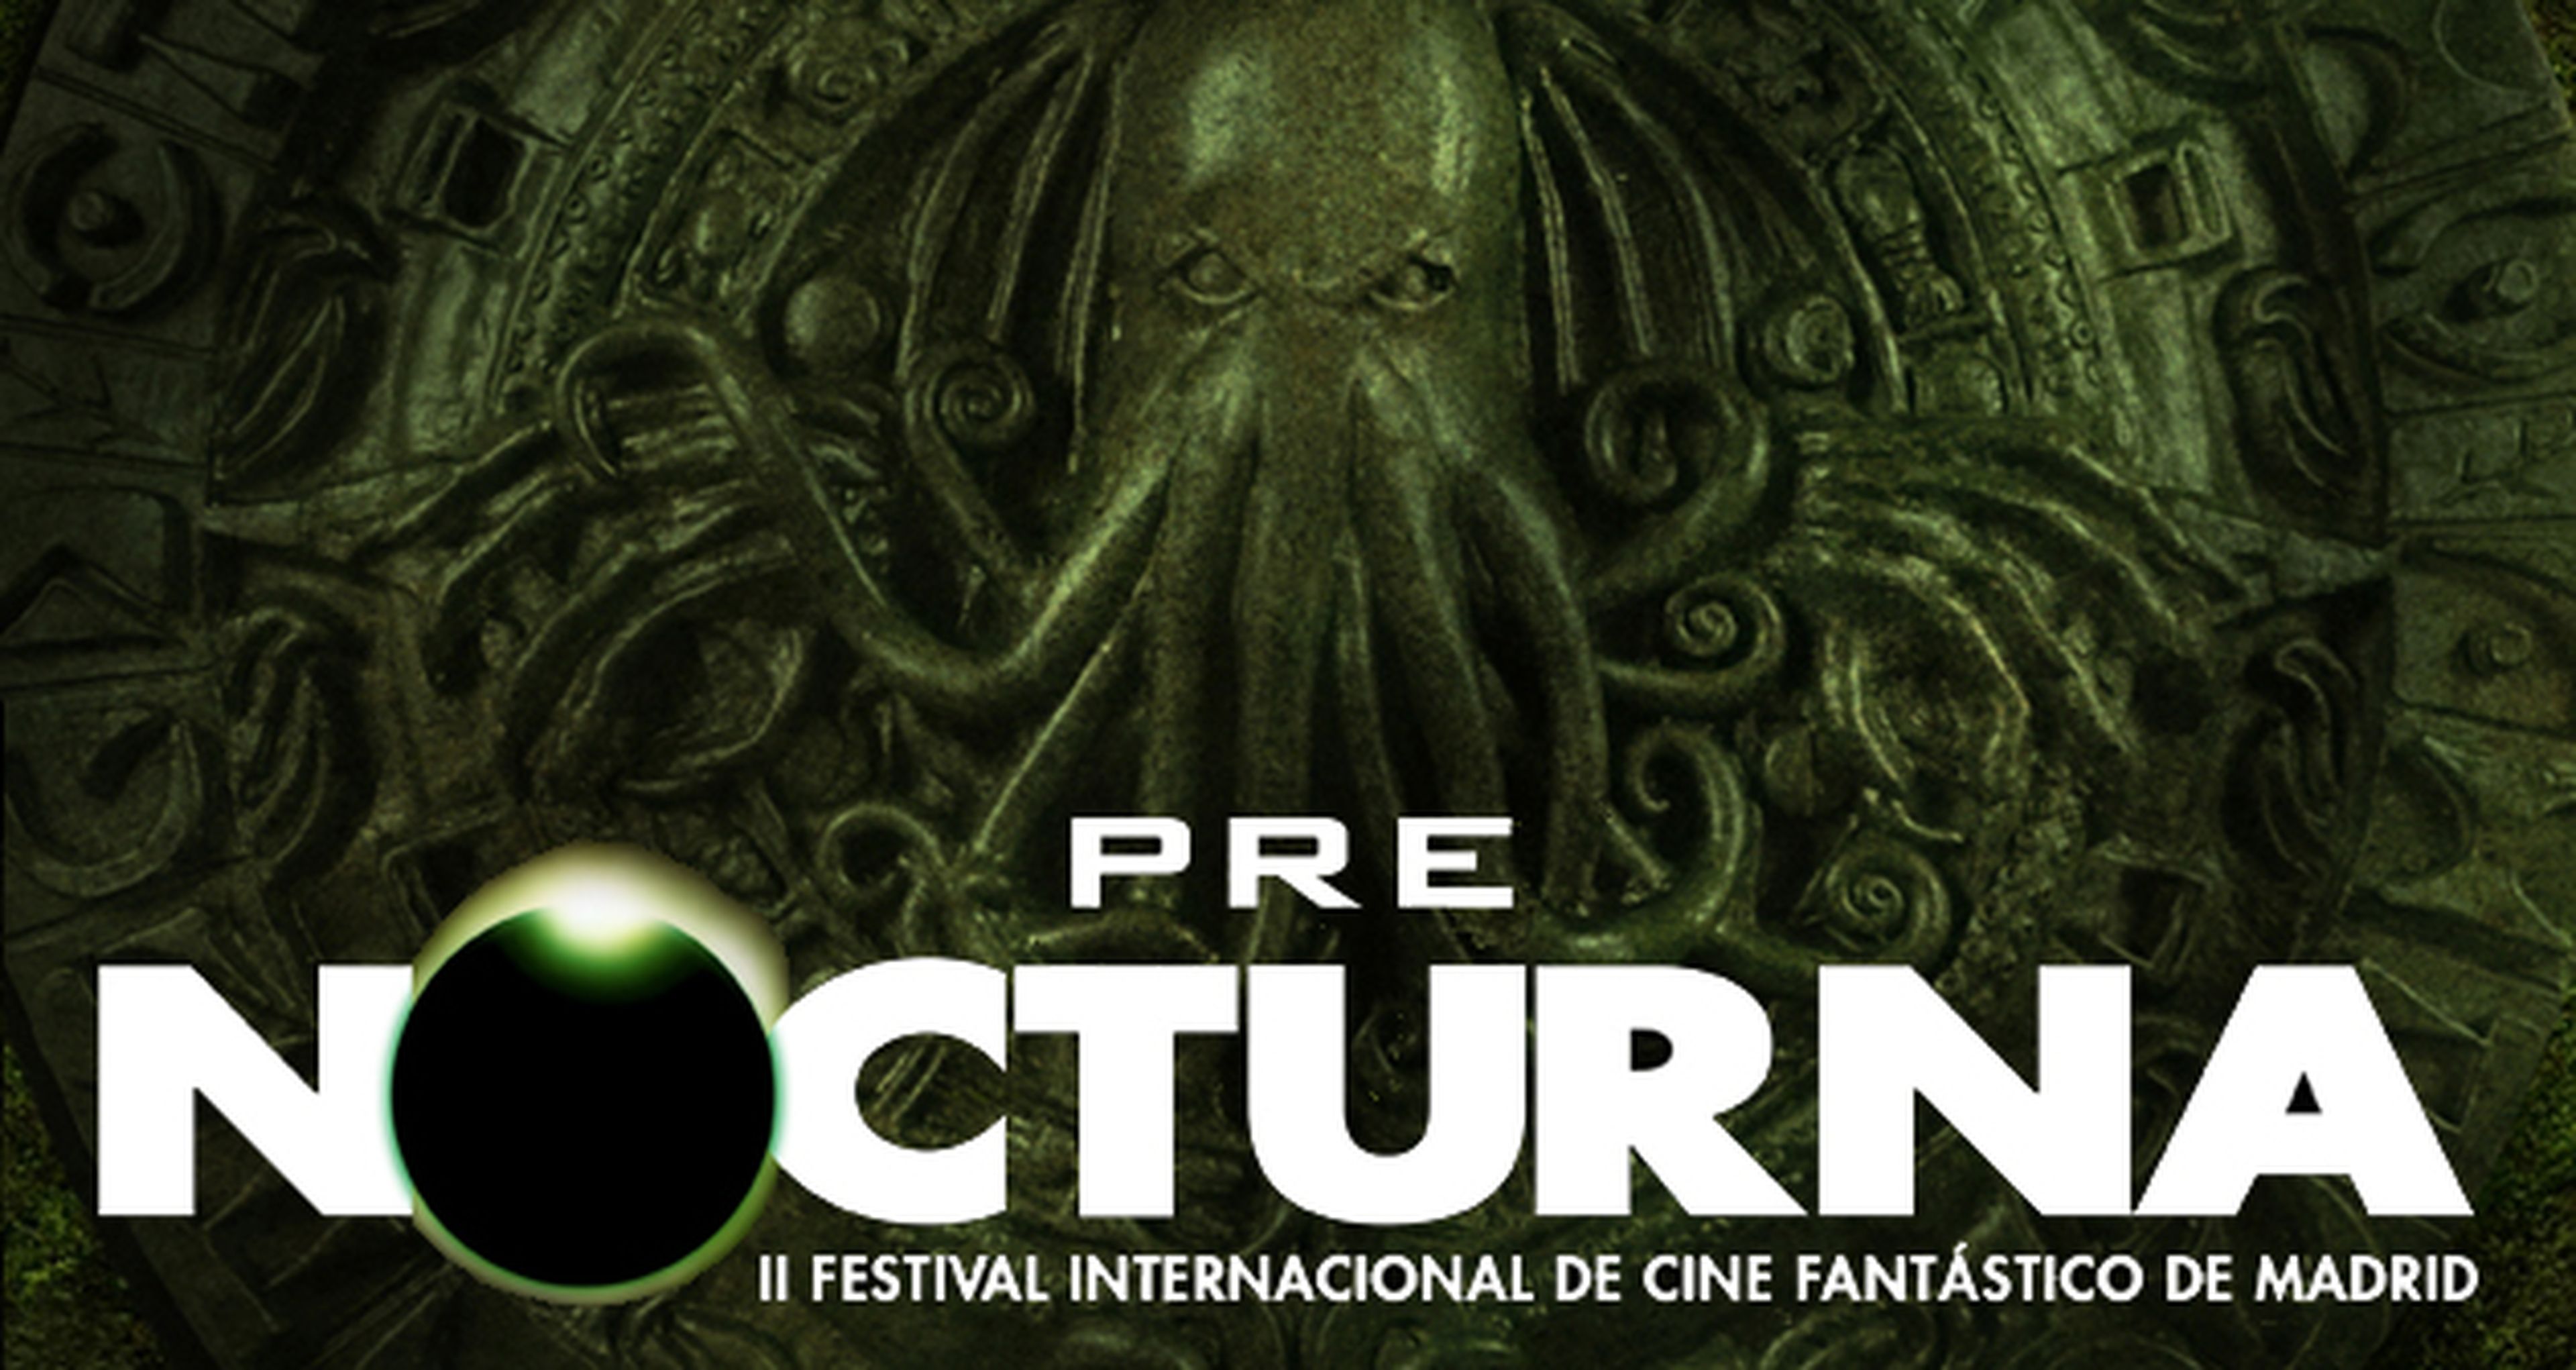 El programa del festival de cine fantástico Prenocturna 2014